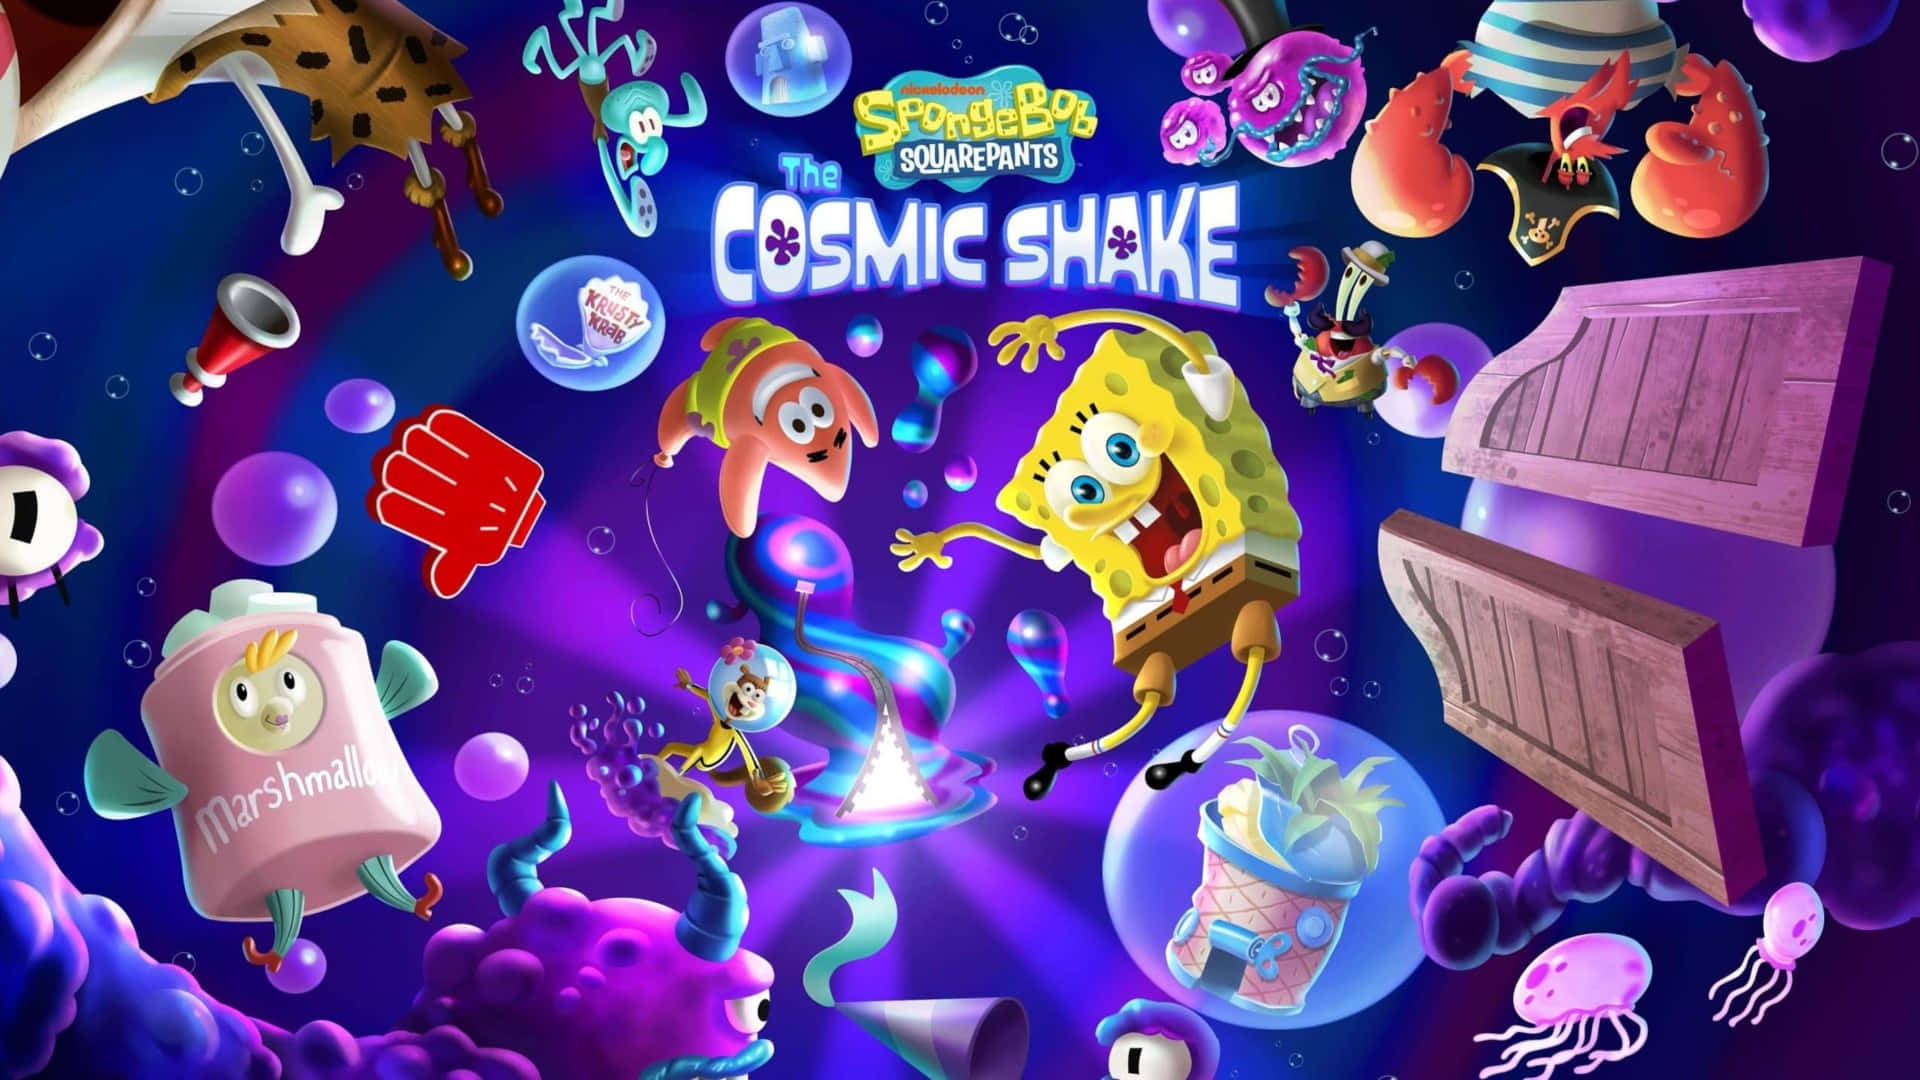 Spongebob Squarepants Ice Cream Shake Screenshot